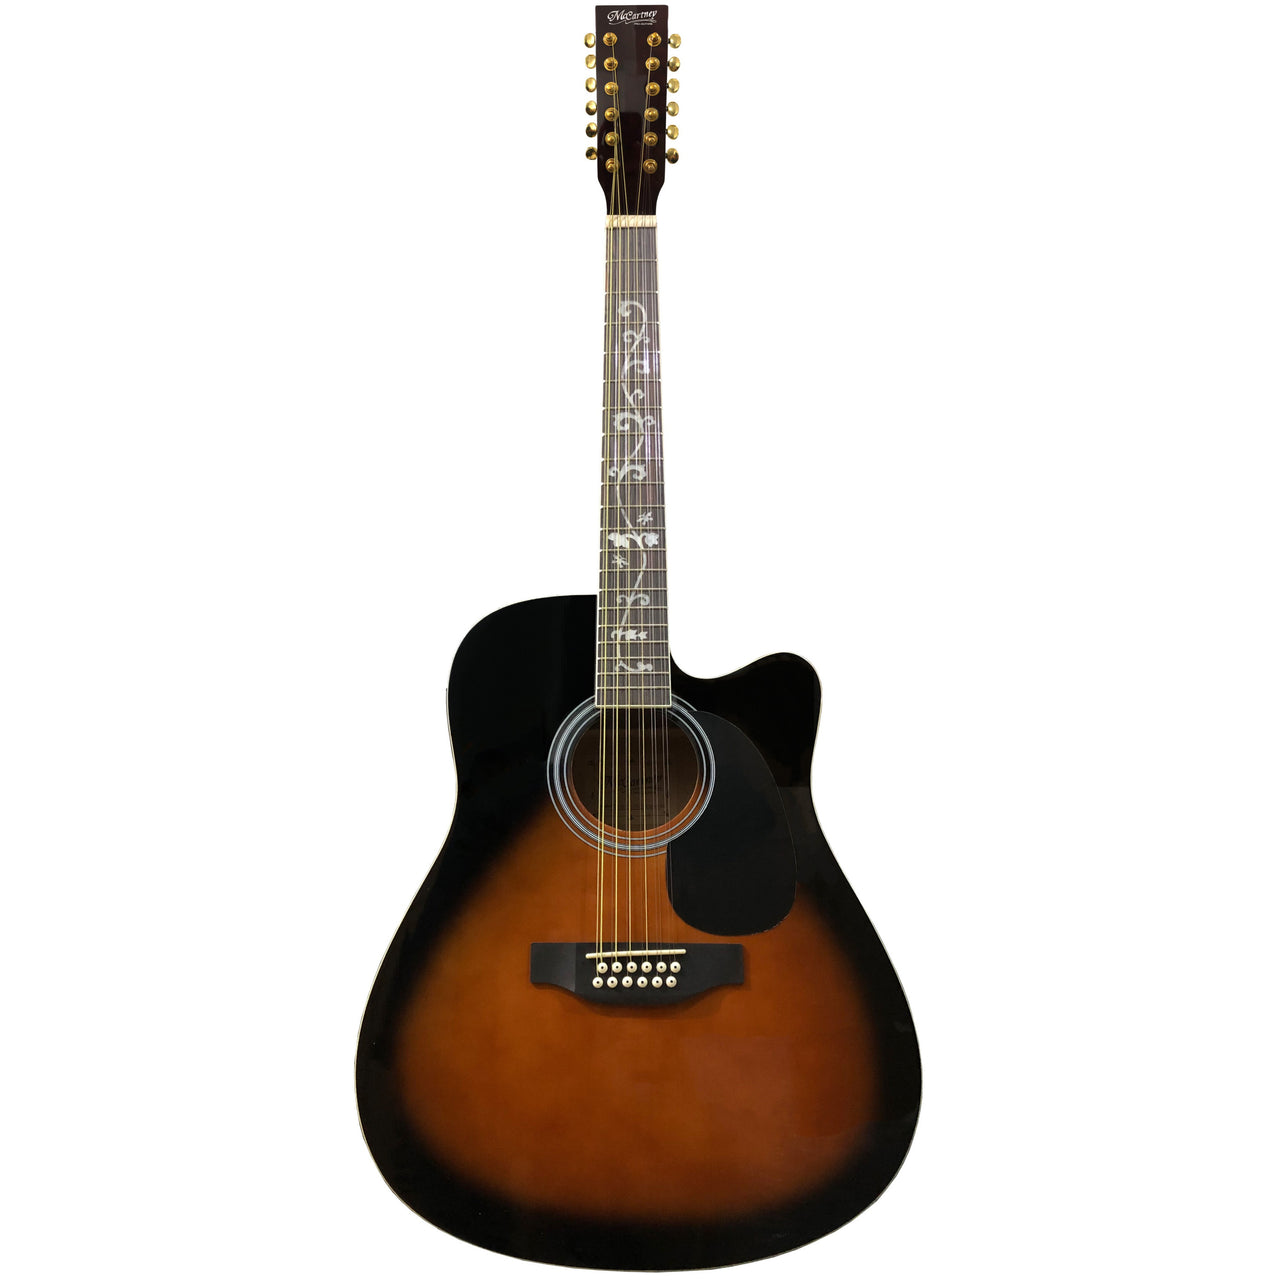 Guitarra Electroacustica Mc Cartney Bfg4117c/12eq5-tbs 12 Cuerdas Tabaco